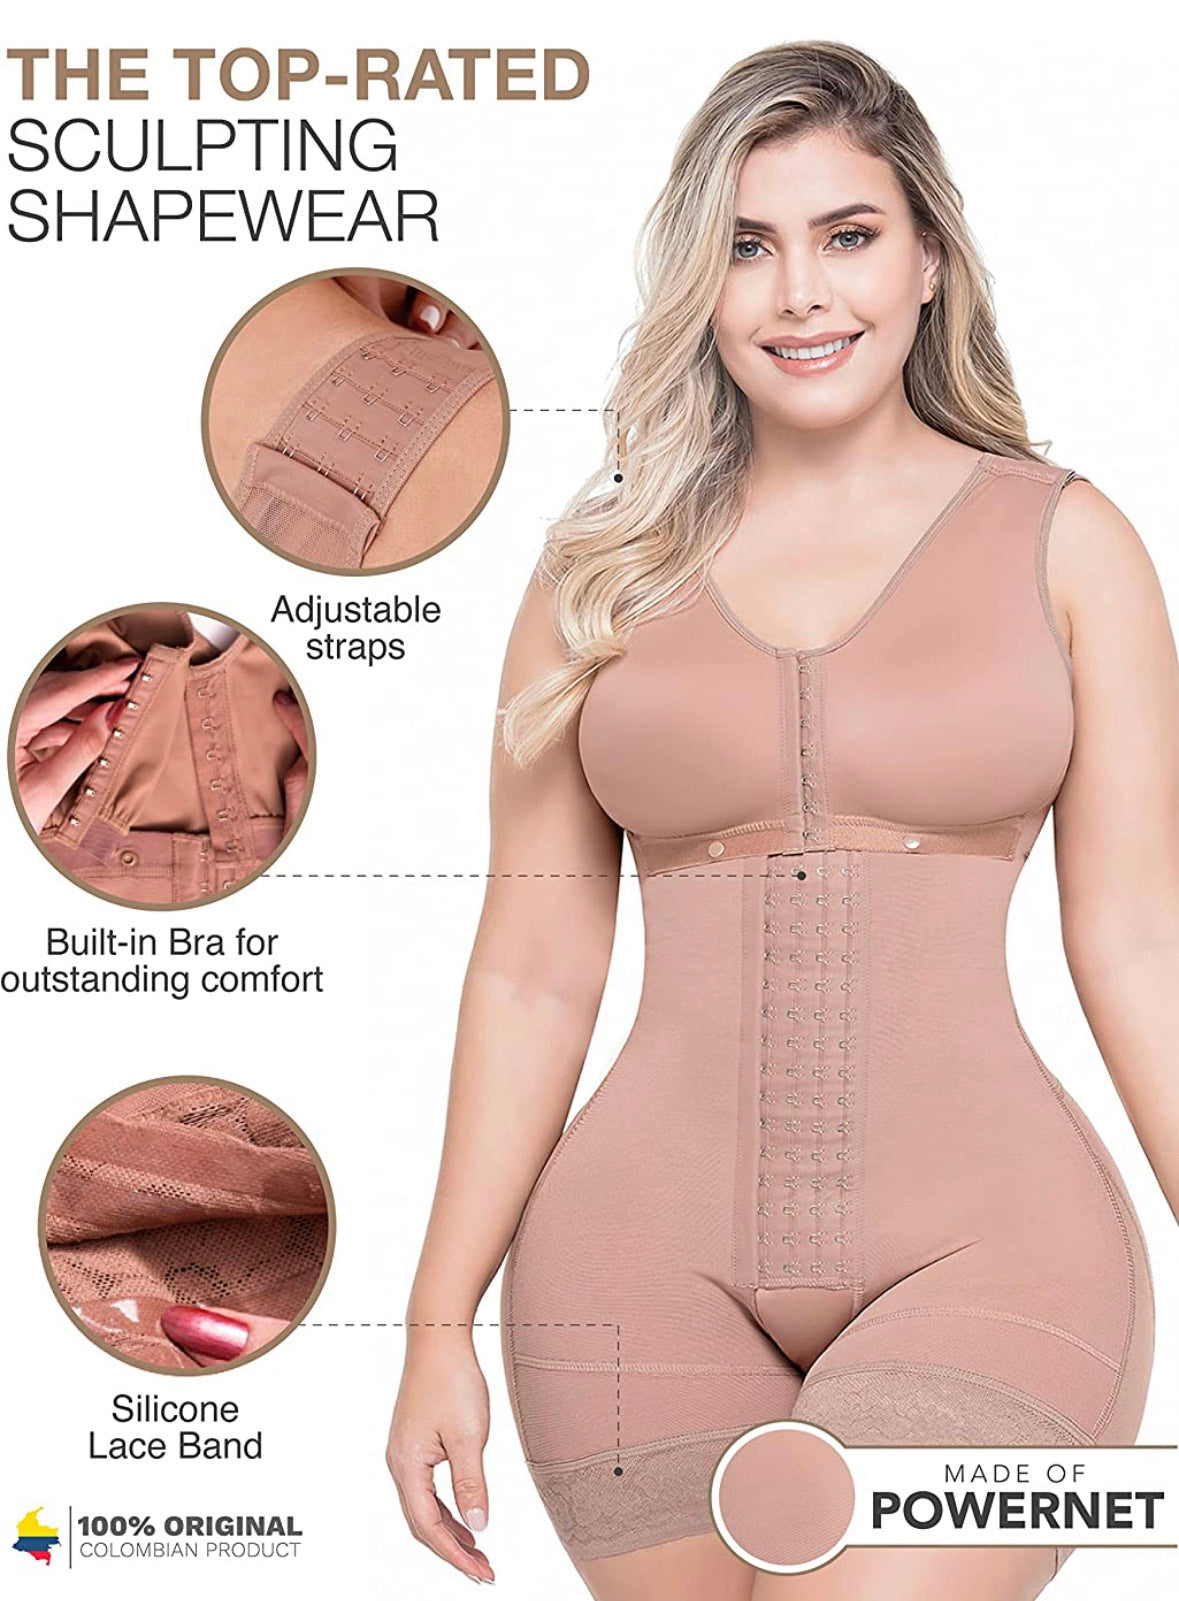 Steel Boned Control Shapewear Bodysuit Sleeveless Women Body